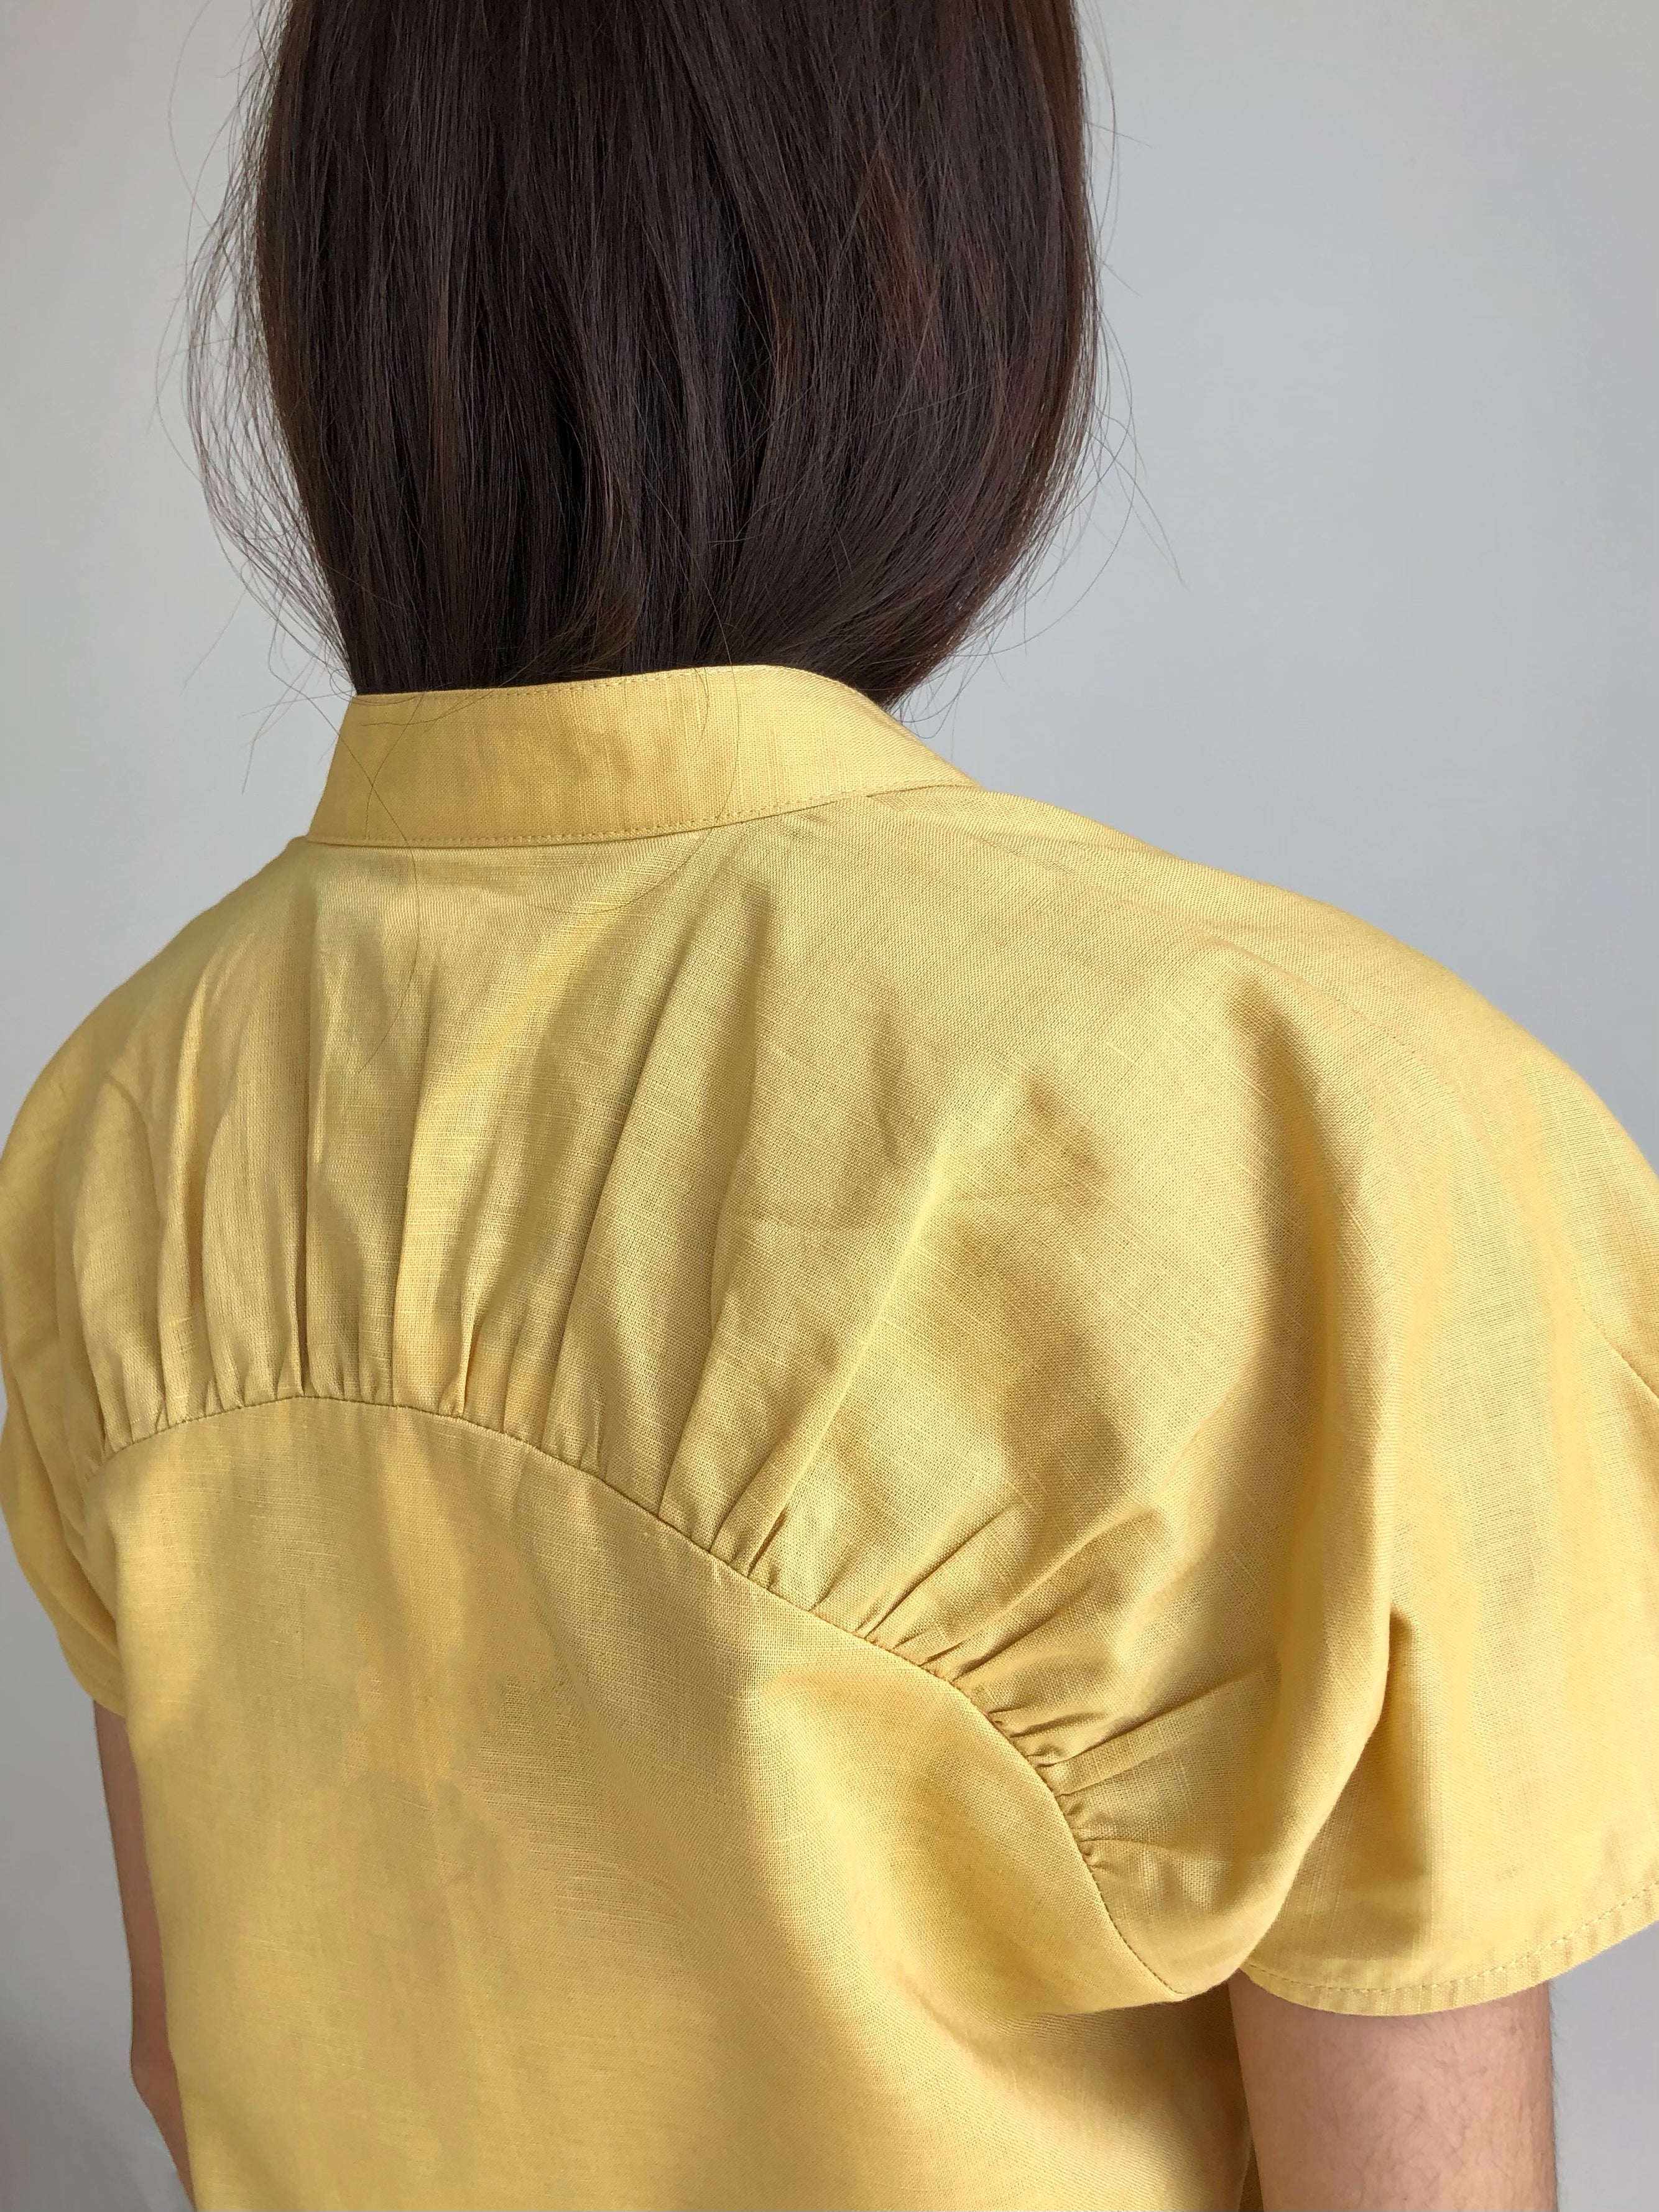 ORIENTAL MINI WRAP DRESS in yellow